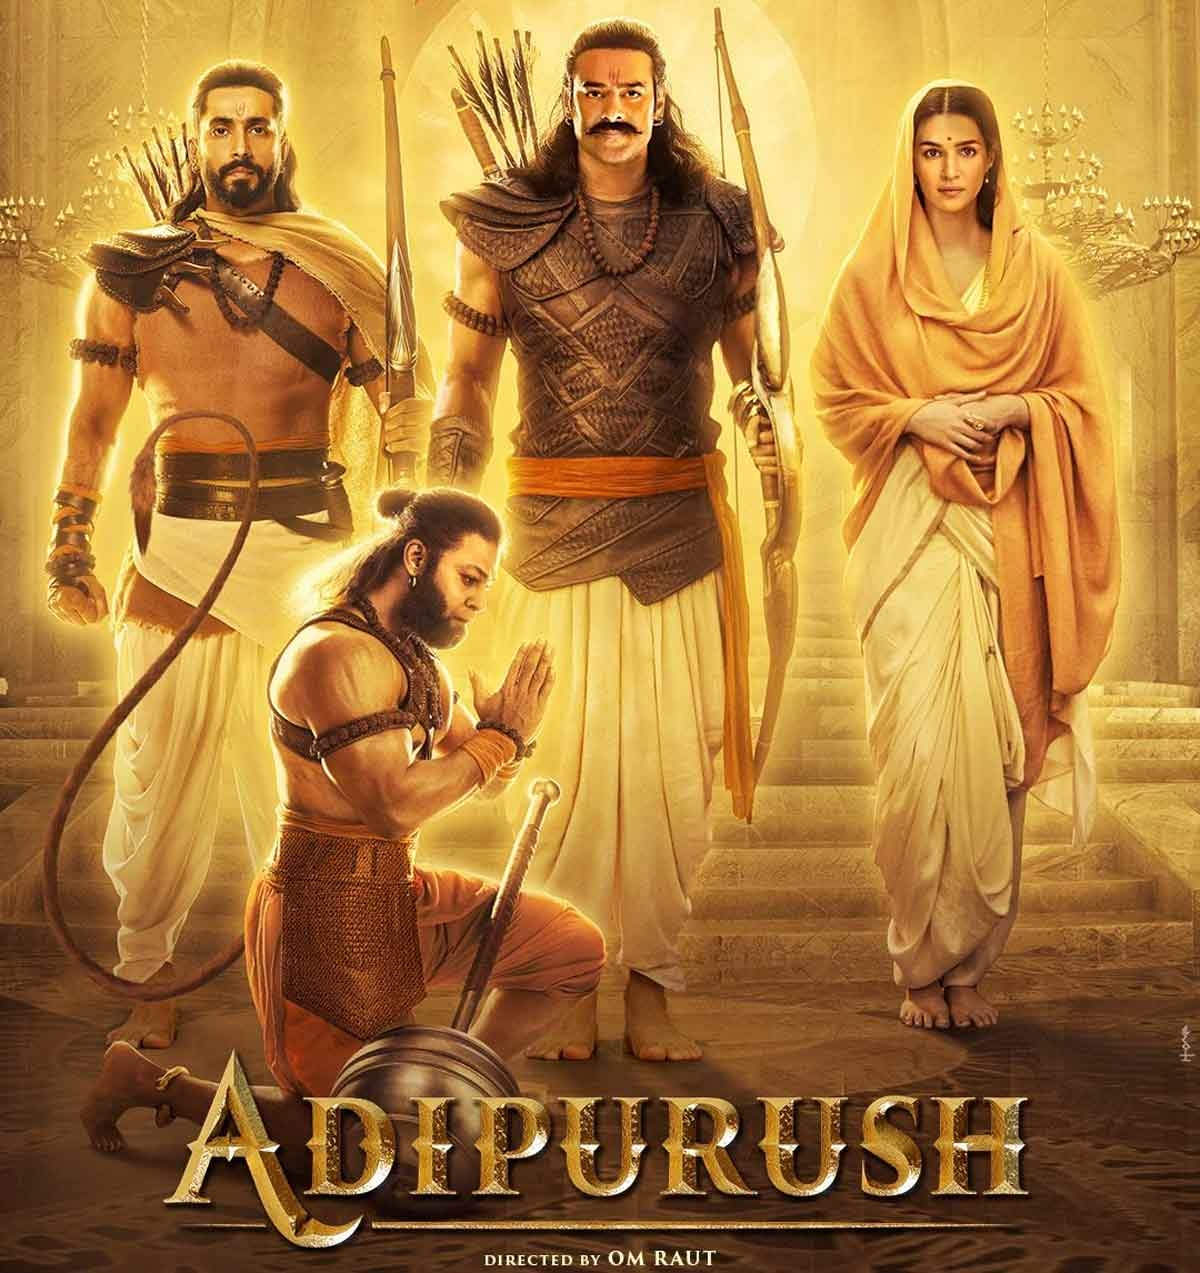 adipurush movie review in tamil